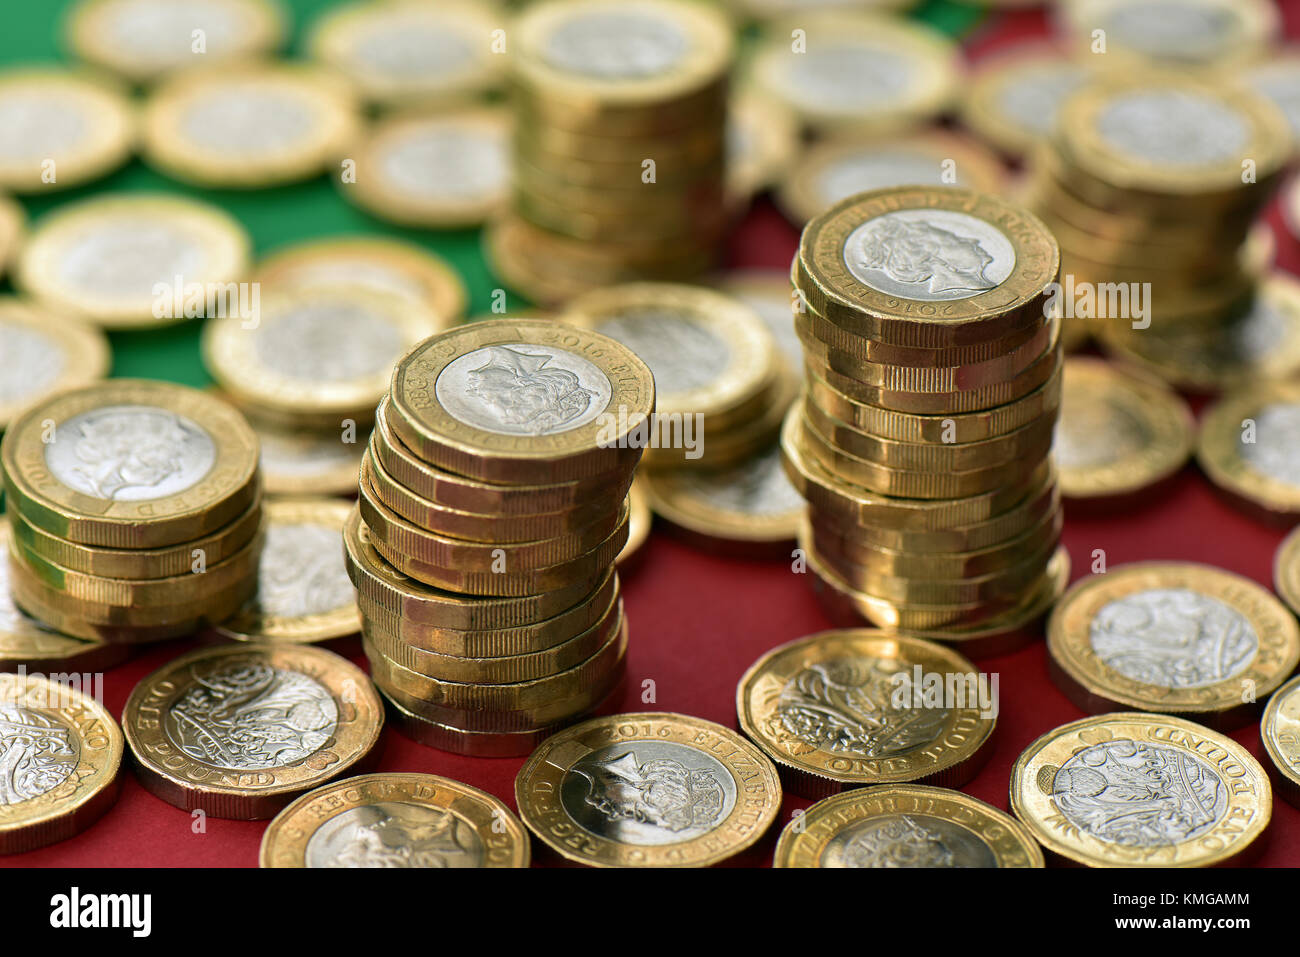 Pound Münzen in großen Mengen auf einer rot-grünen Weihnachtlich gestalteten Hintergrund. Weihnachten verbringen und Münzen, die auf eine saisonale Einstellung Stockfoto